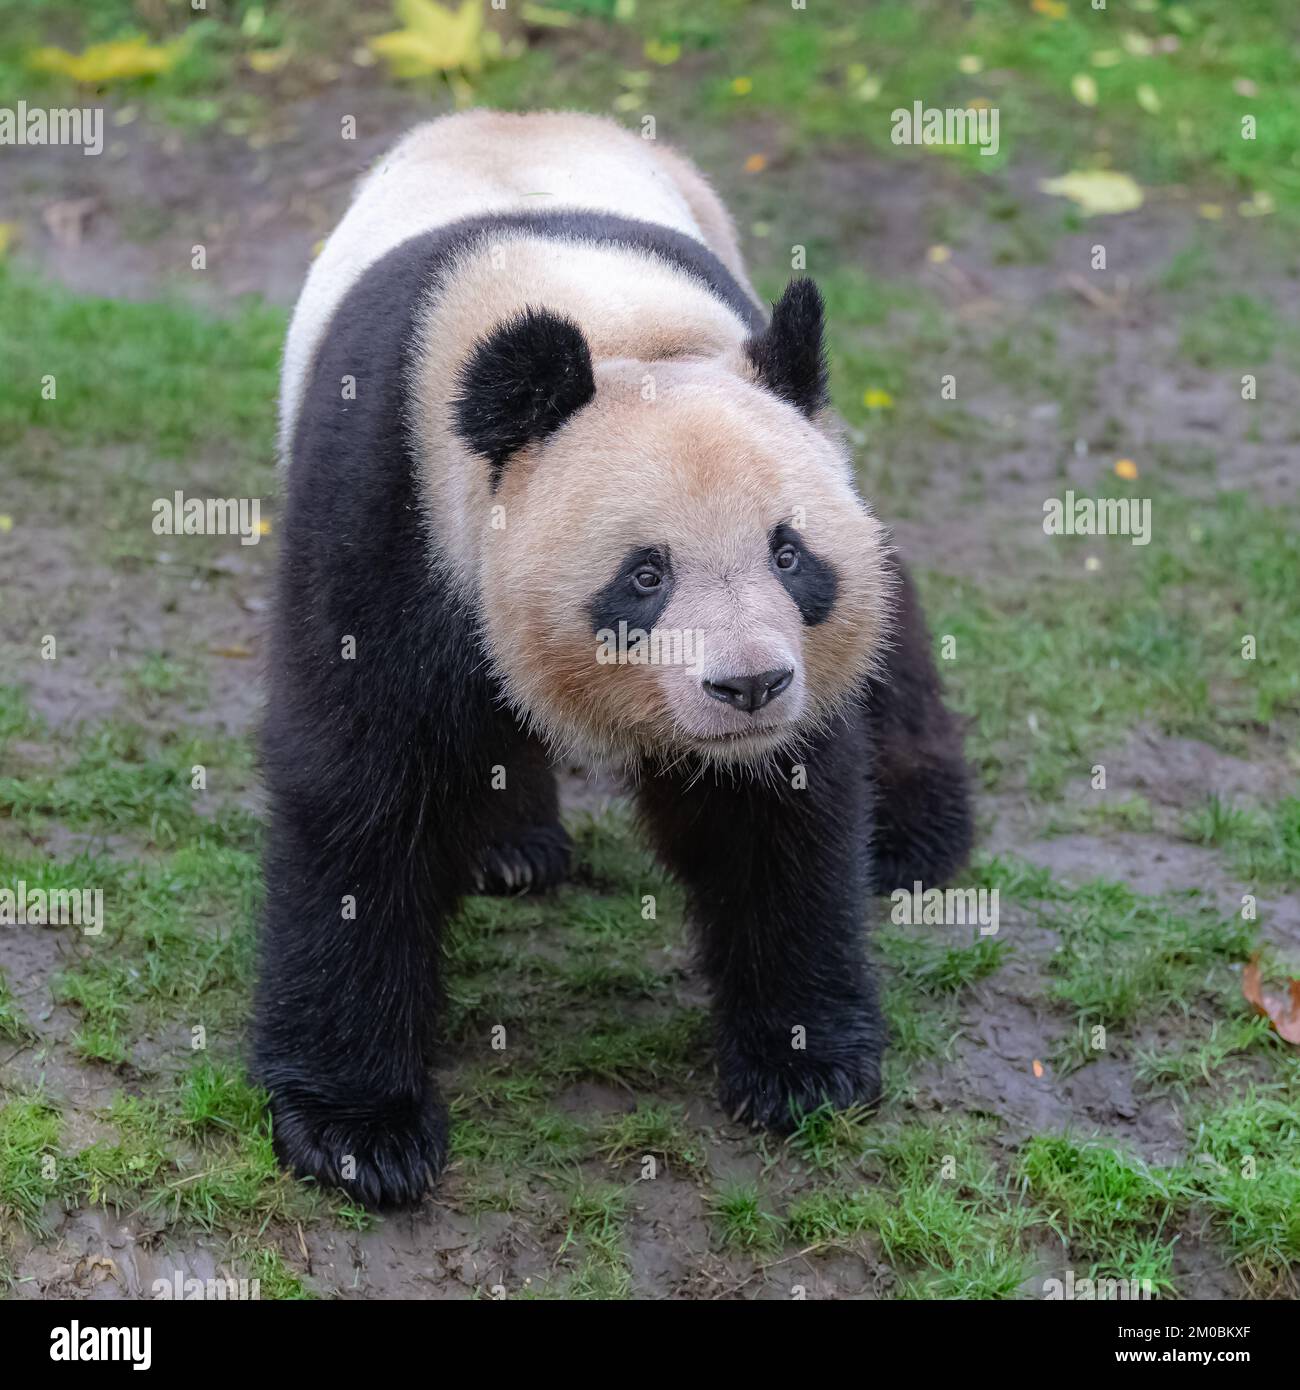 Un panda géant debout sur l'herbe, portrait Banque D'Images